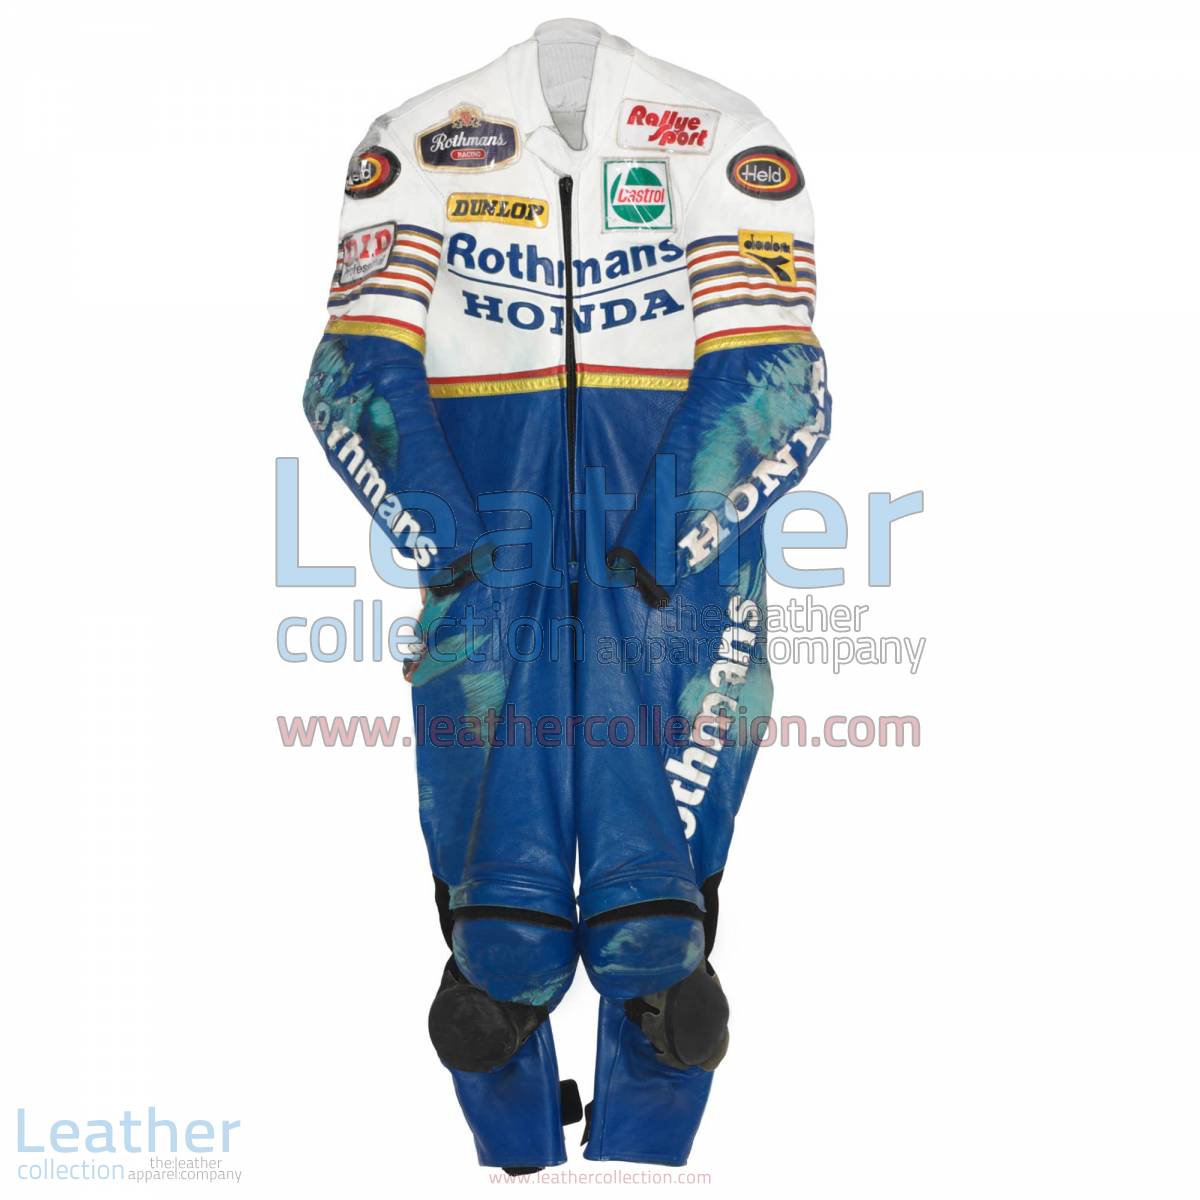 Toni Mang Rothmans Honda GP 1987 Racing Suit